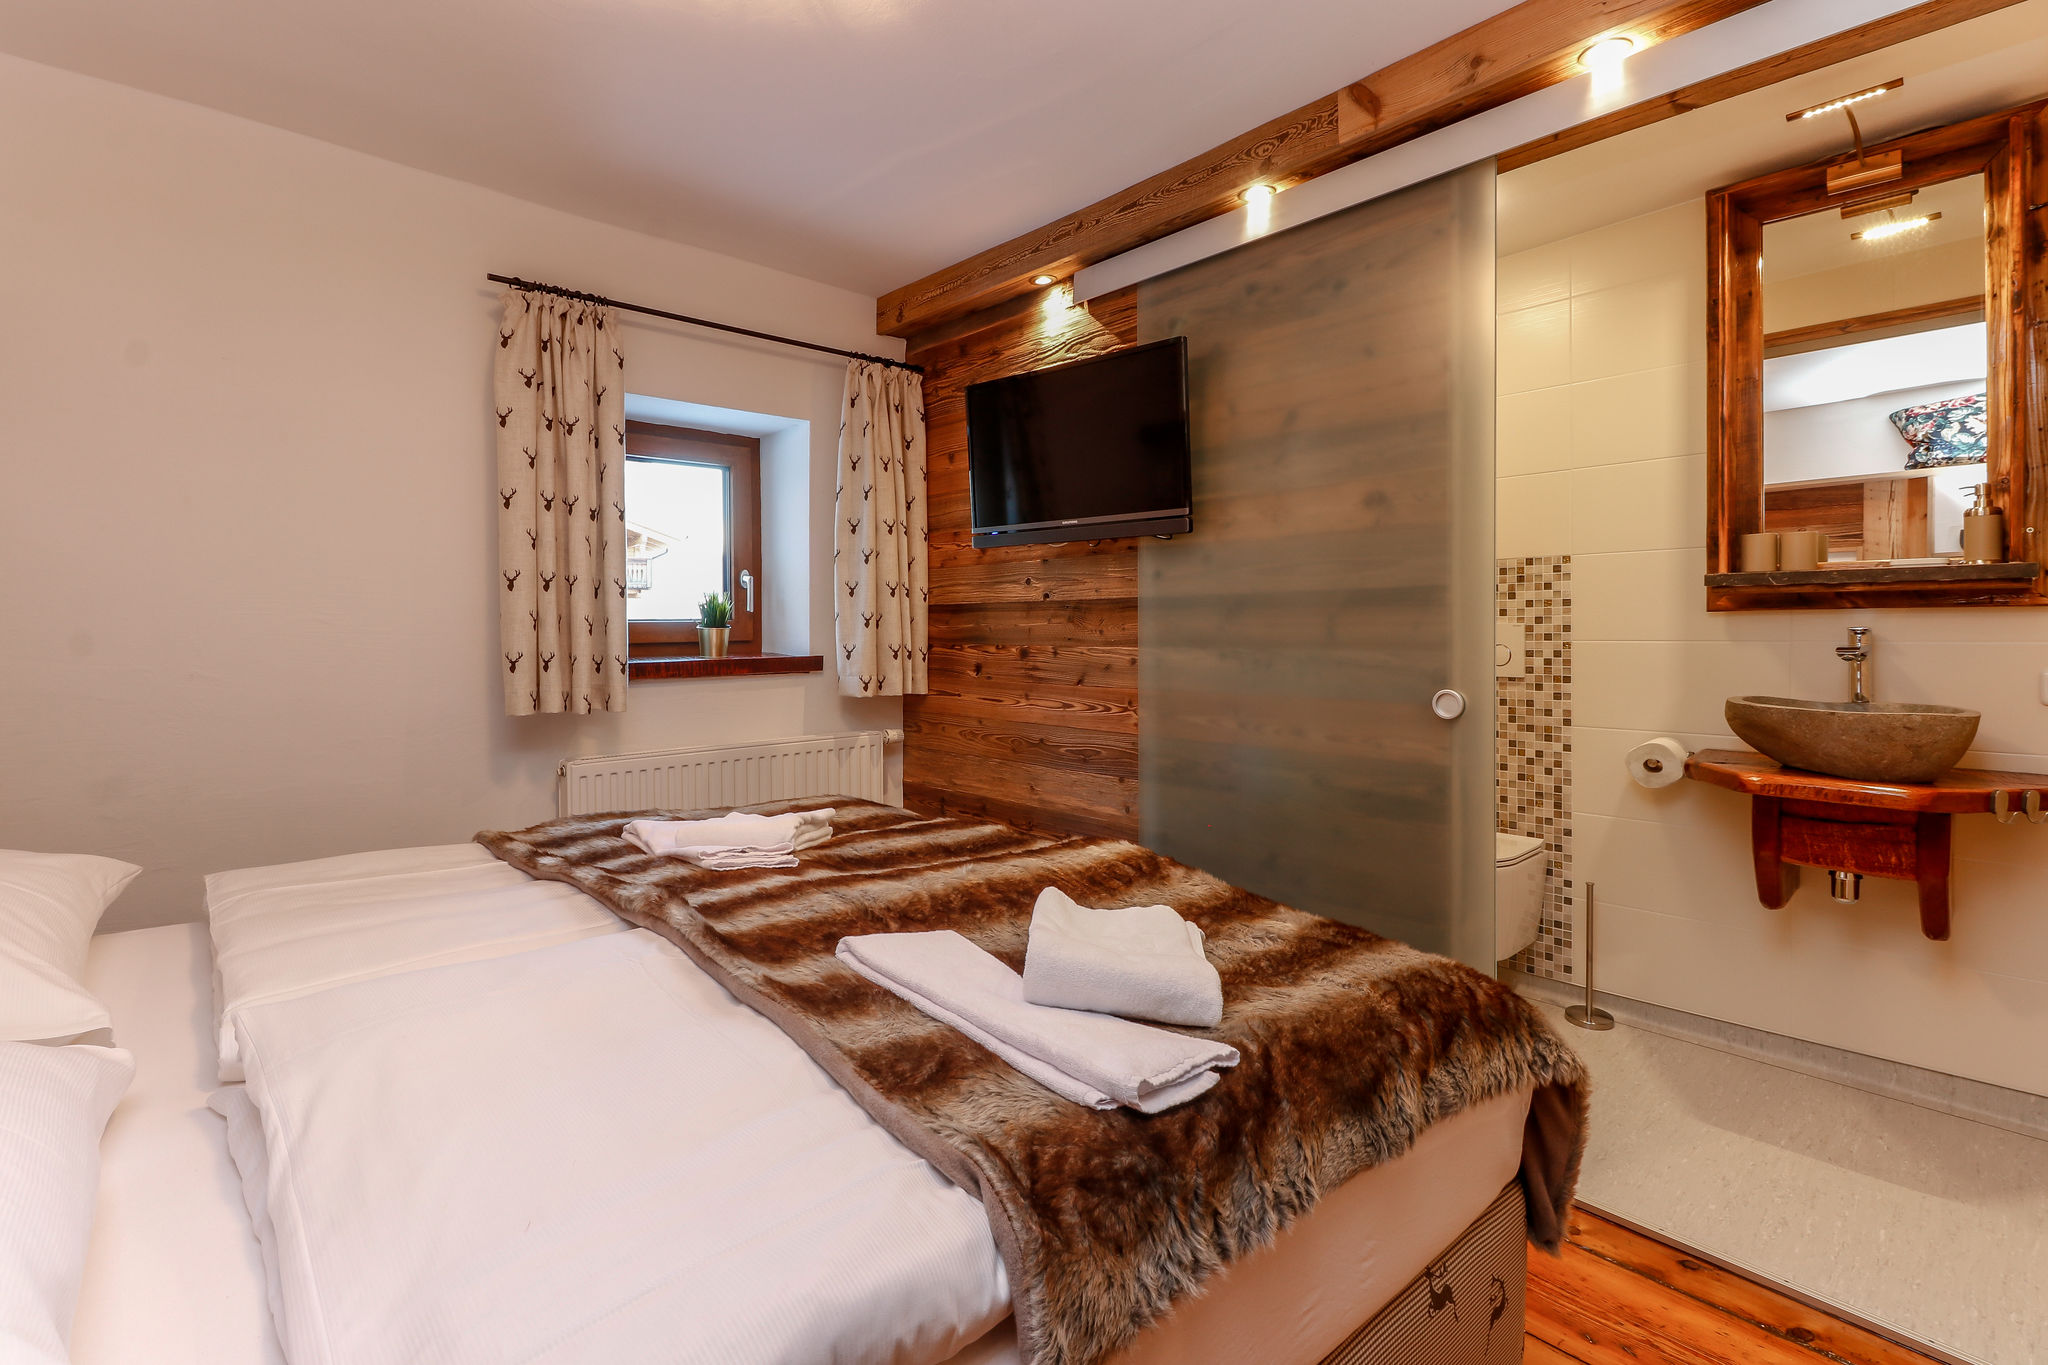 Maison de vacances confortable, située à Rauris, près de la piste de ski